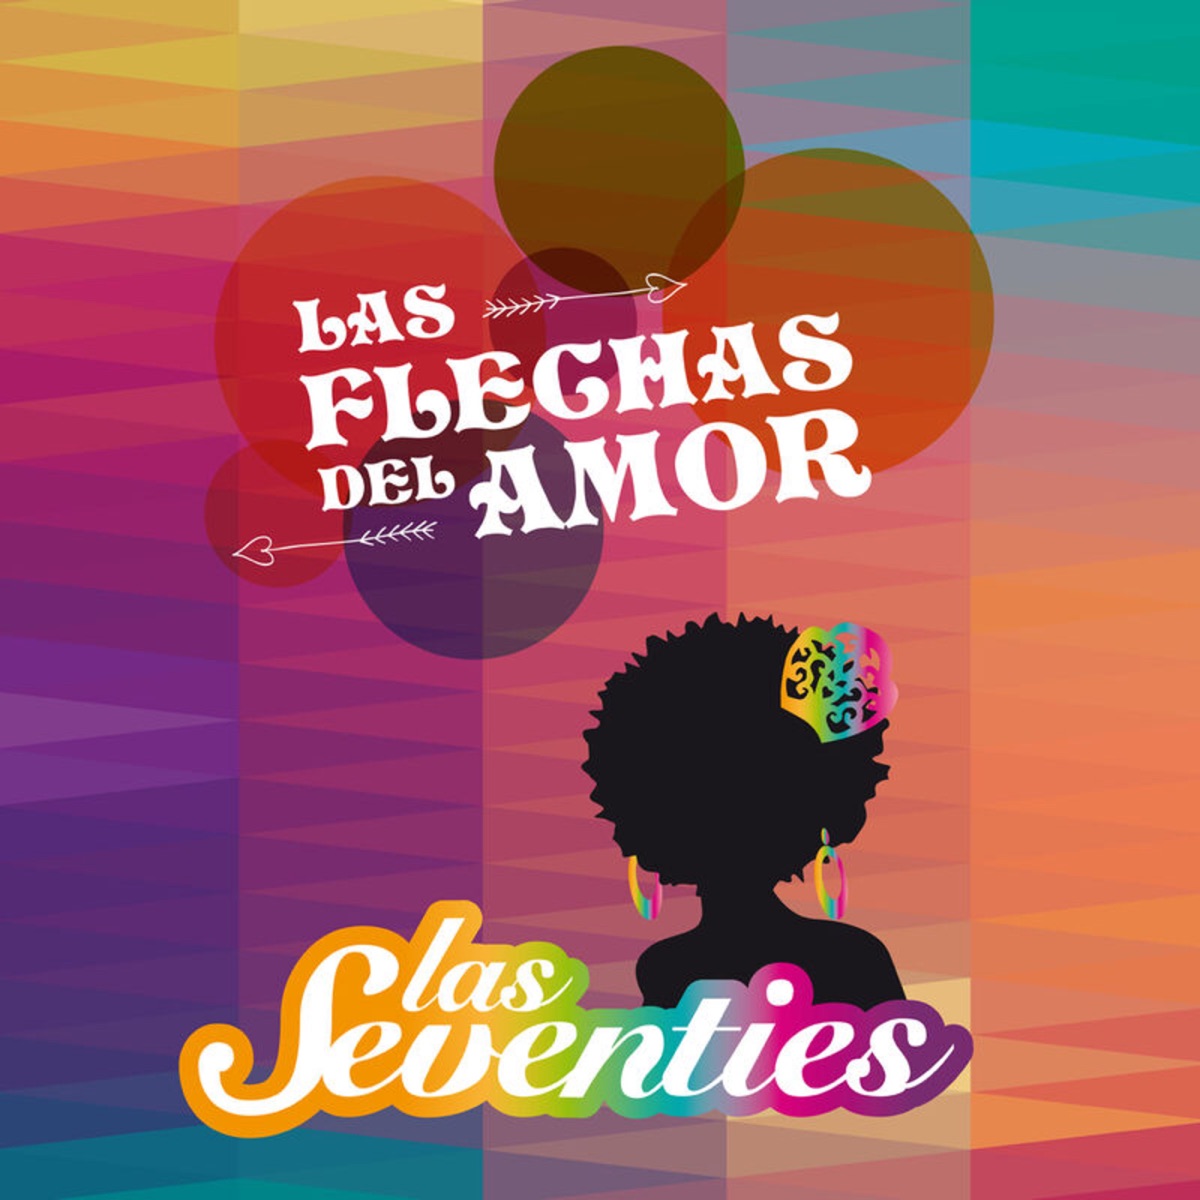 Las Flechas del Amor - Album by Las Seventies - Apple Music